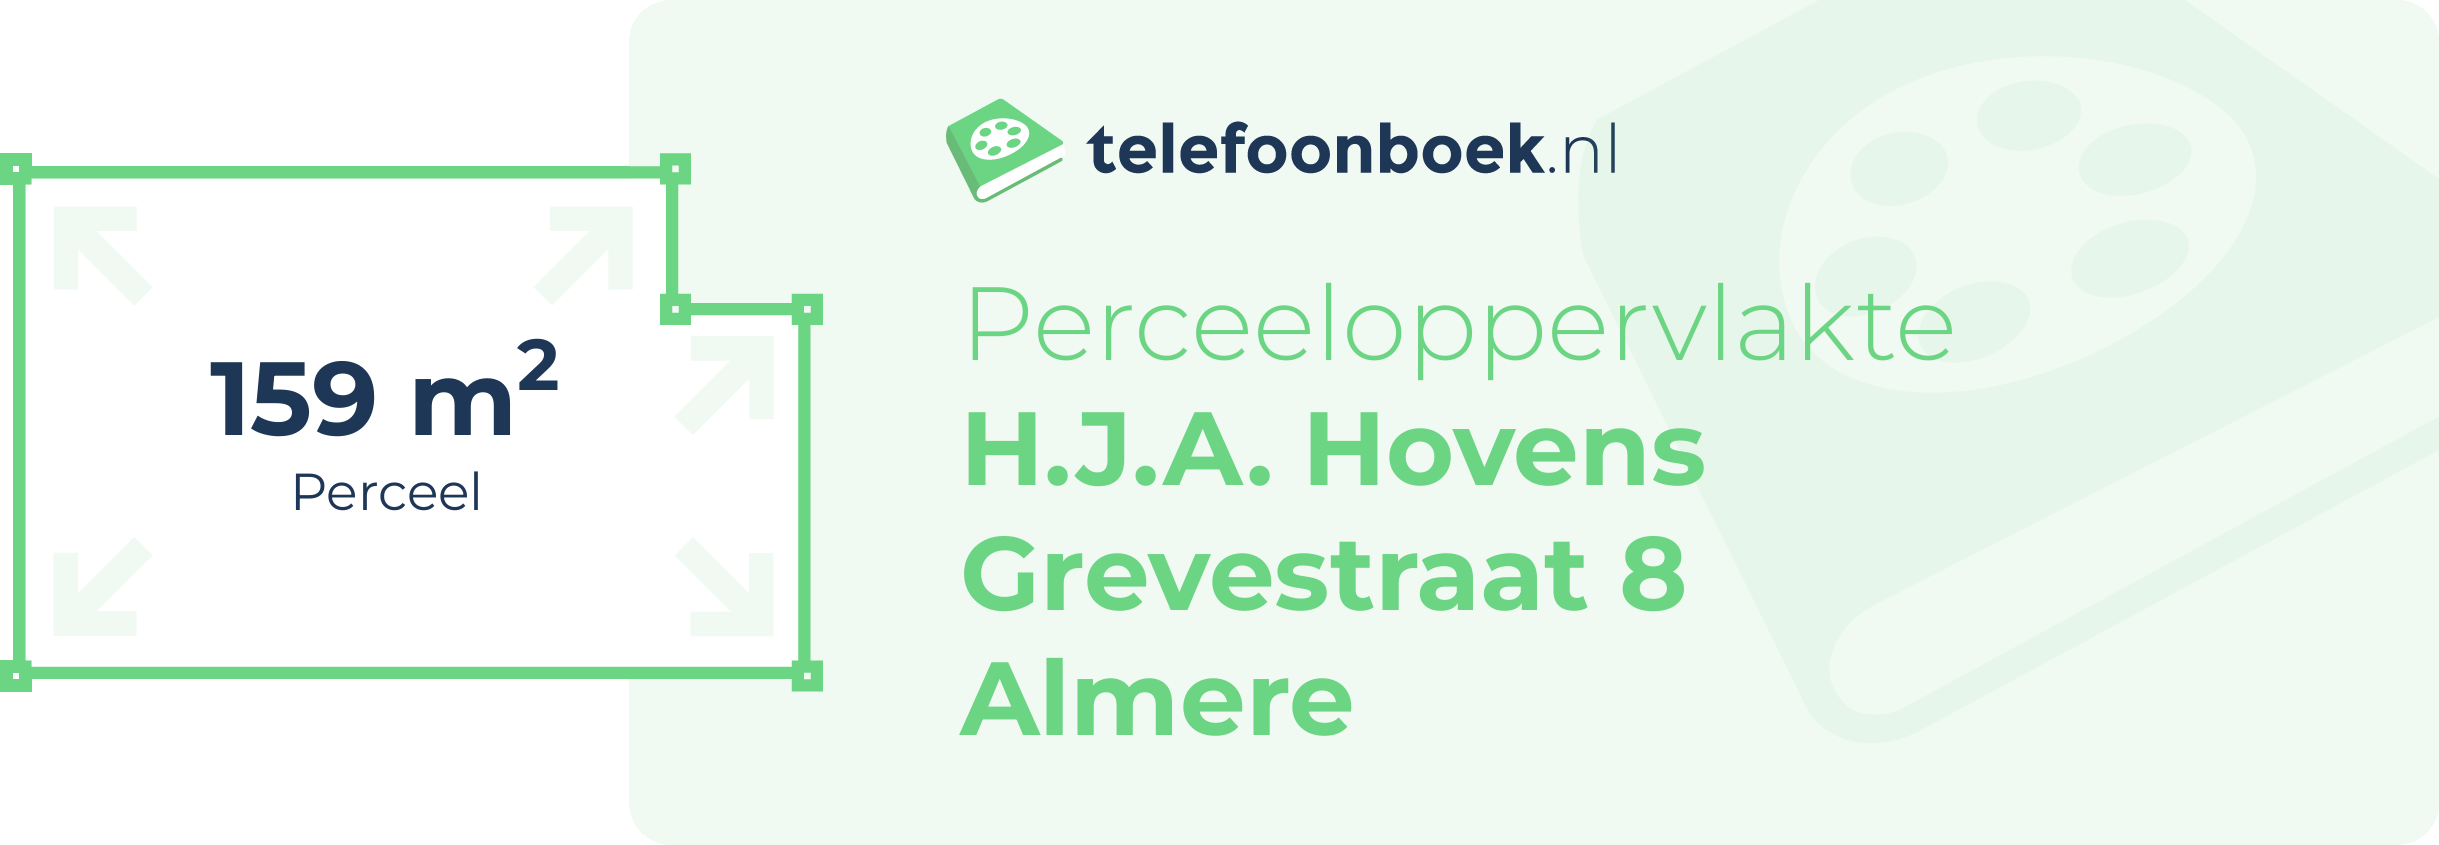 Perceeloppervlakte H.J.A. Hovens Grevestraat 8 Almere